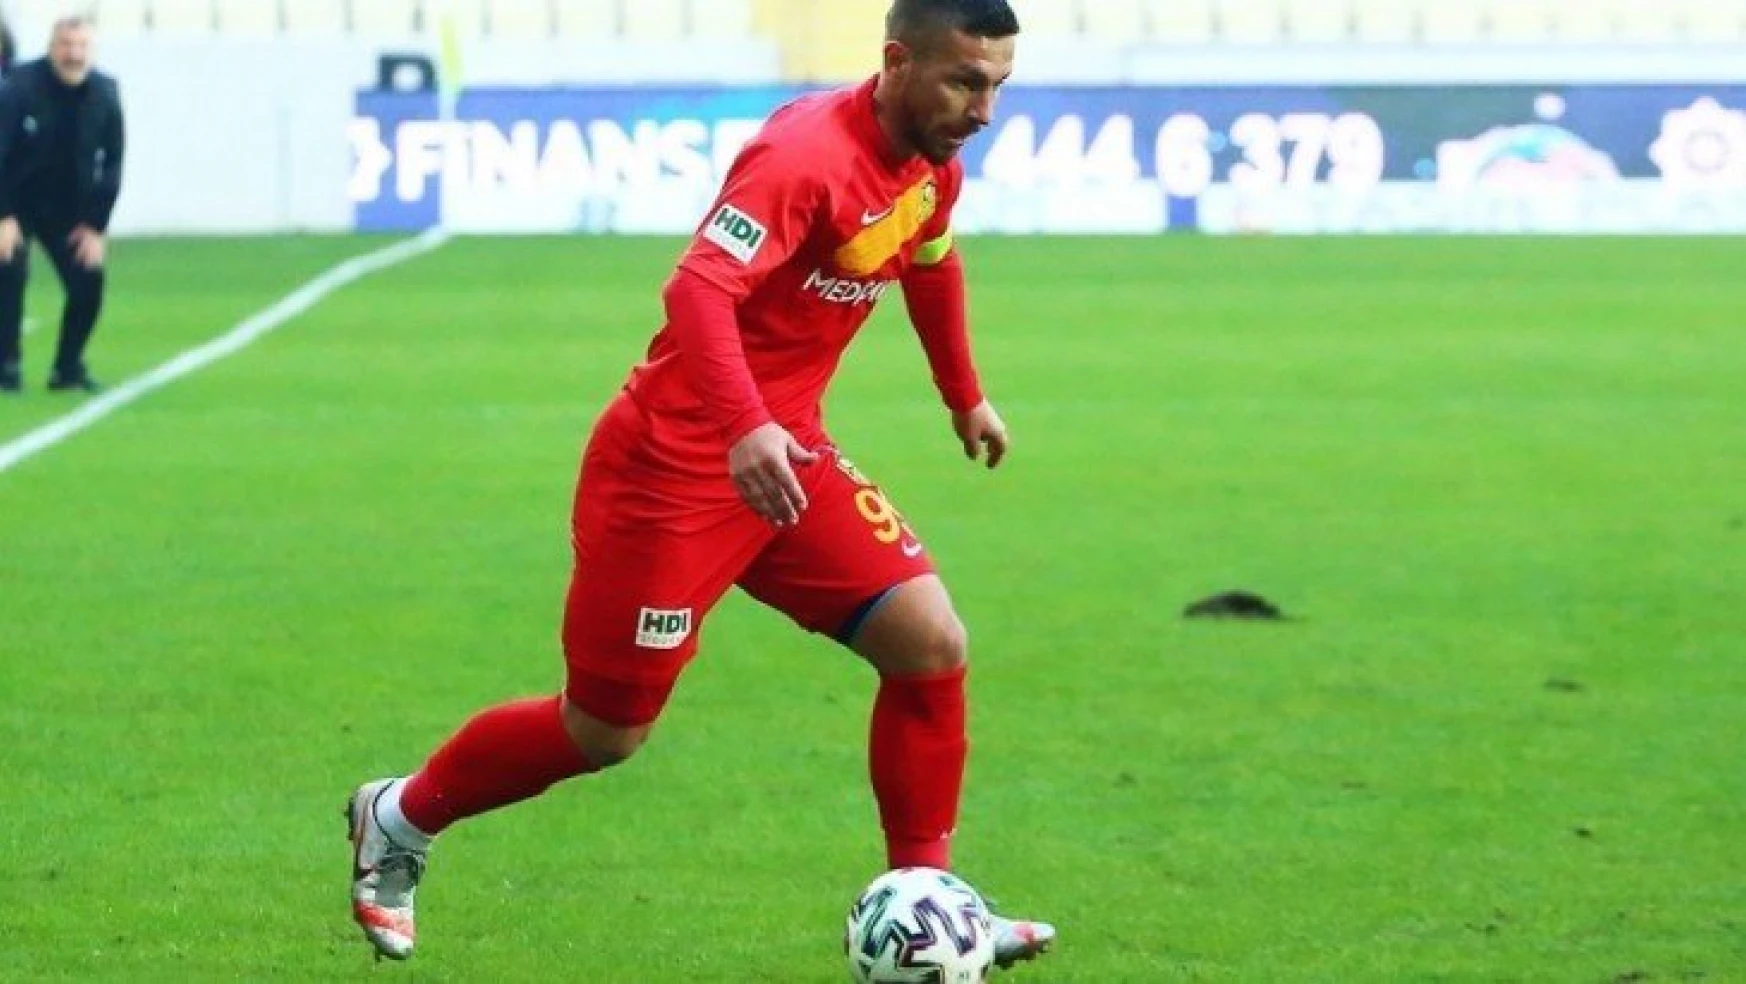 Yeni Malatyaspor'da Erzurumspor maçının faturası ağır oldu